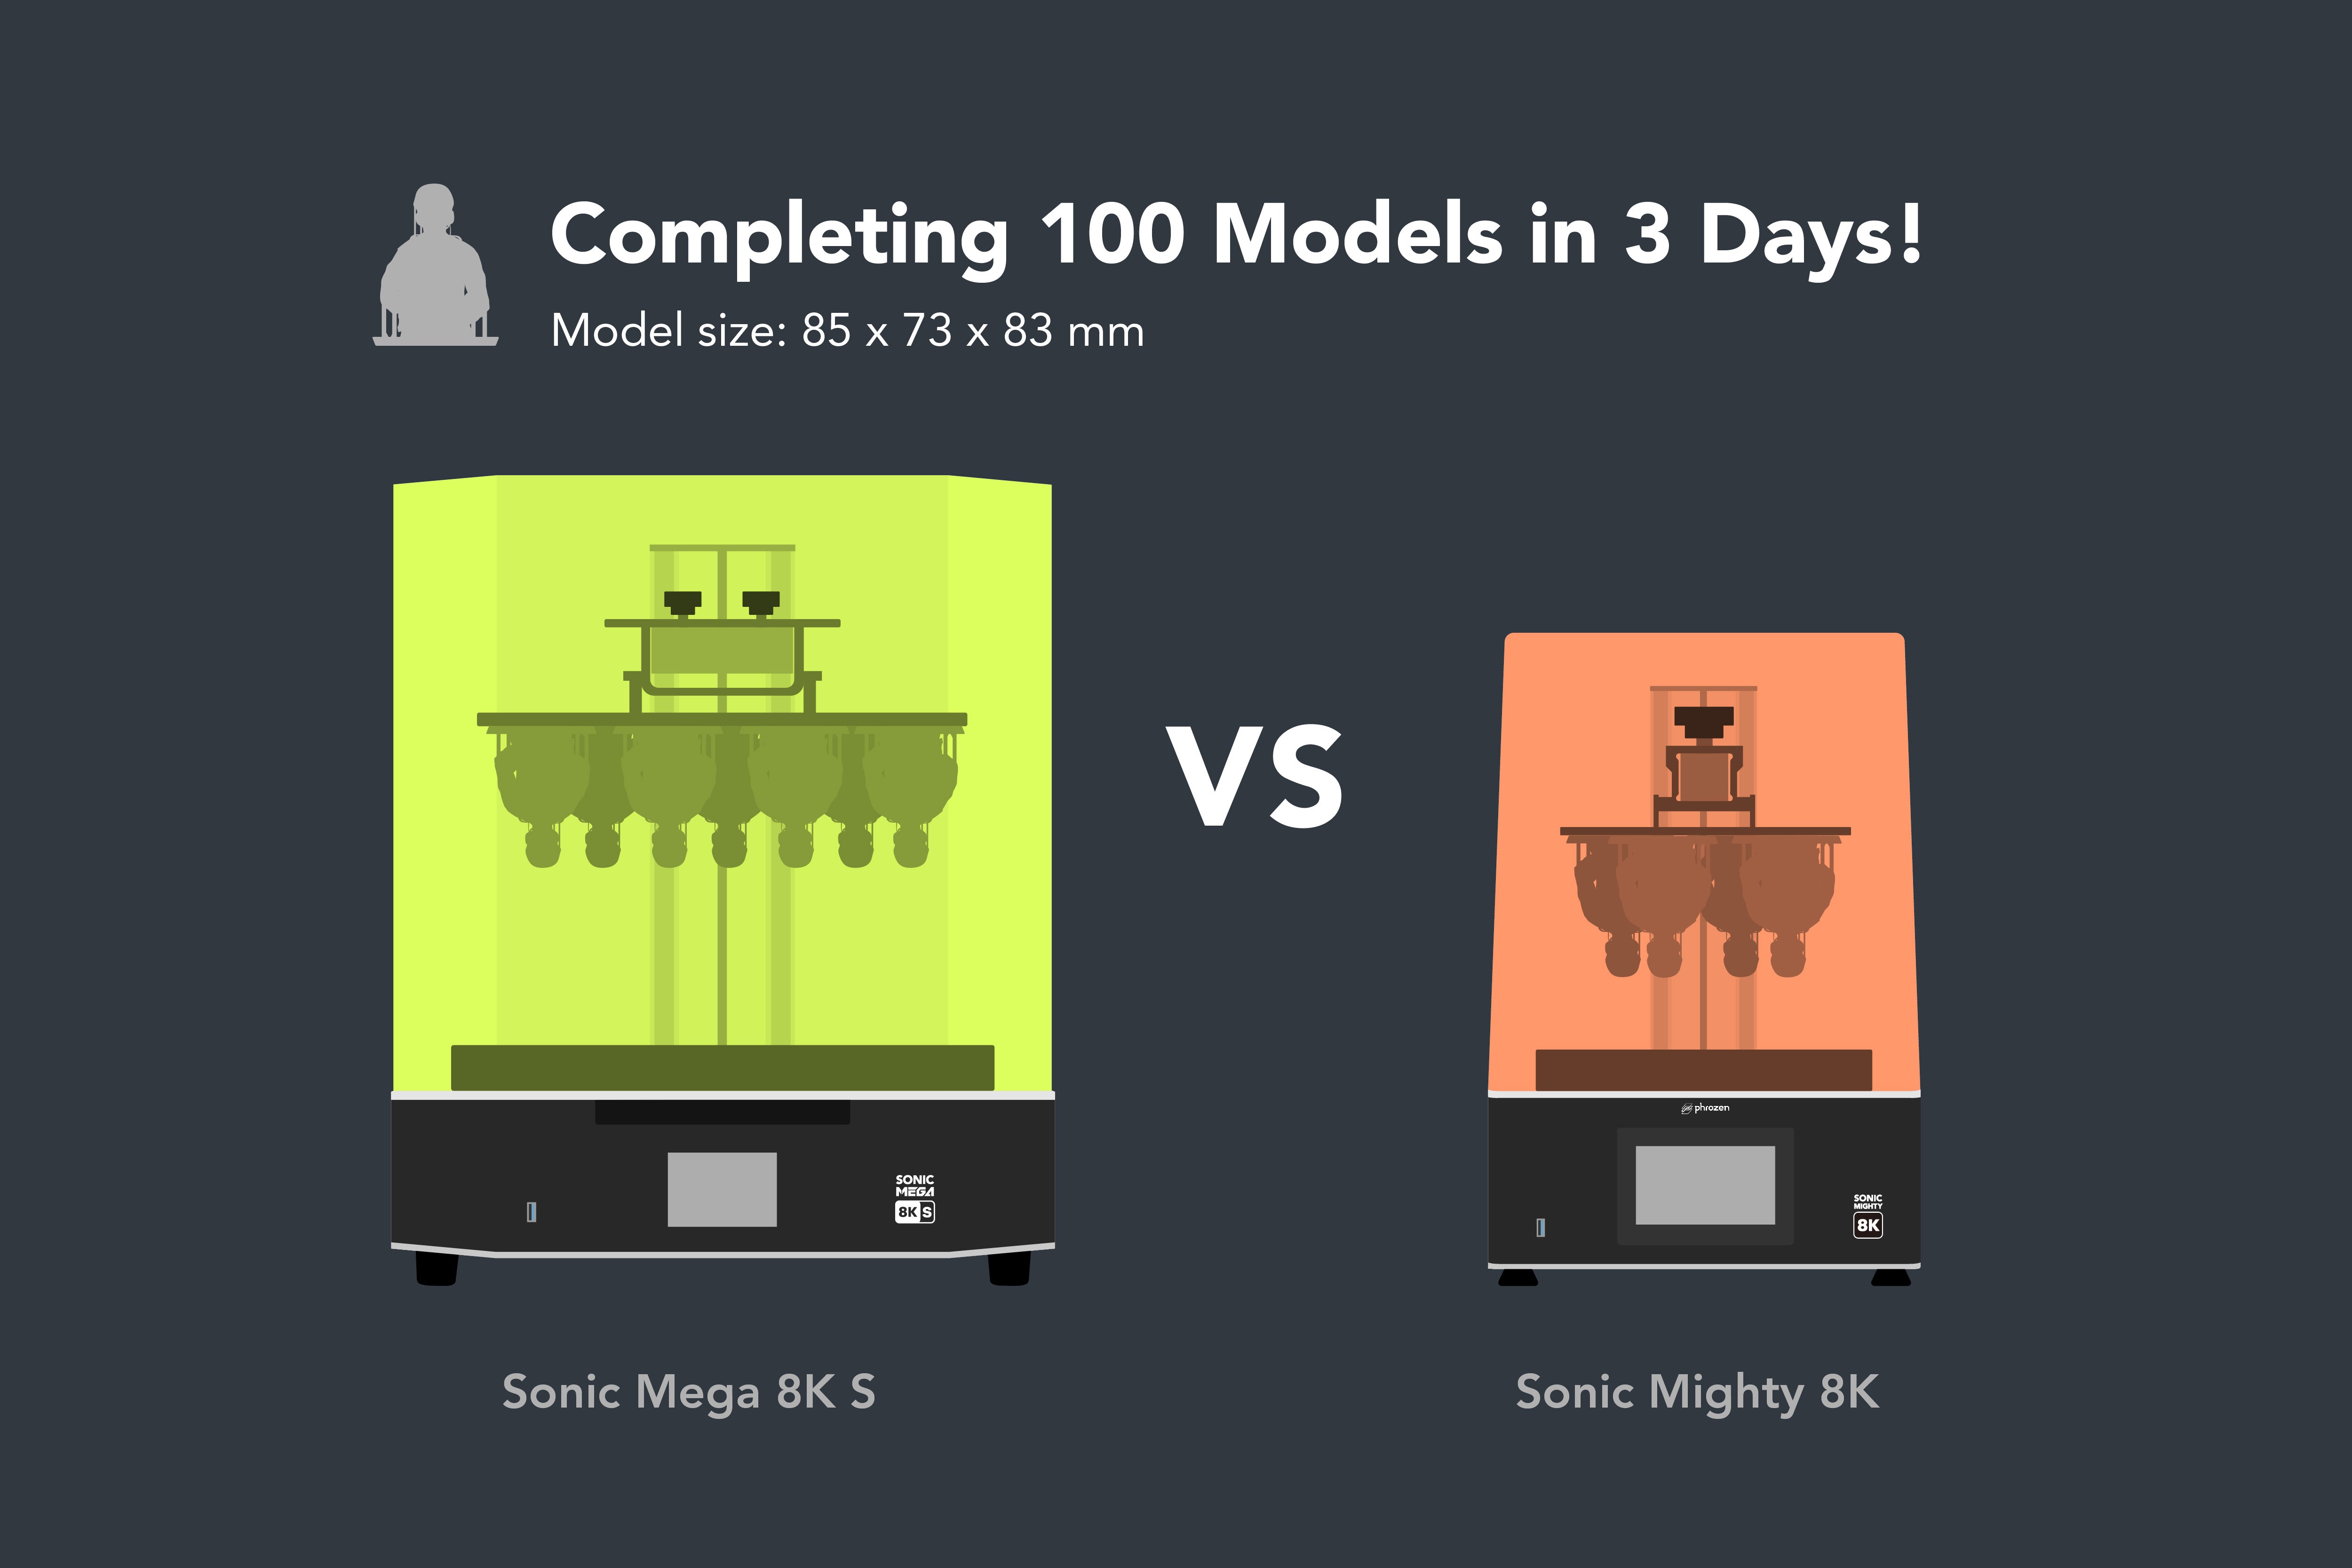 ソニックメガ8K Sとソニックマイティ8Kの比較